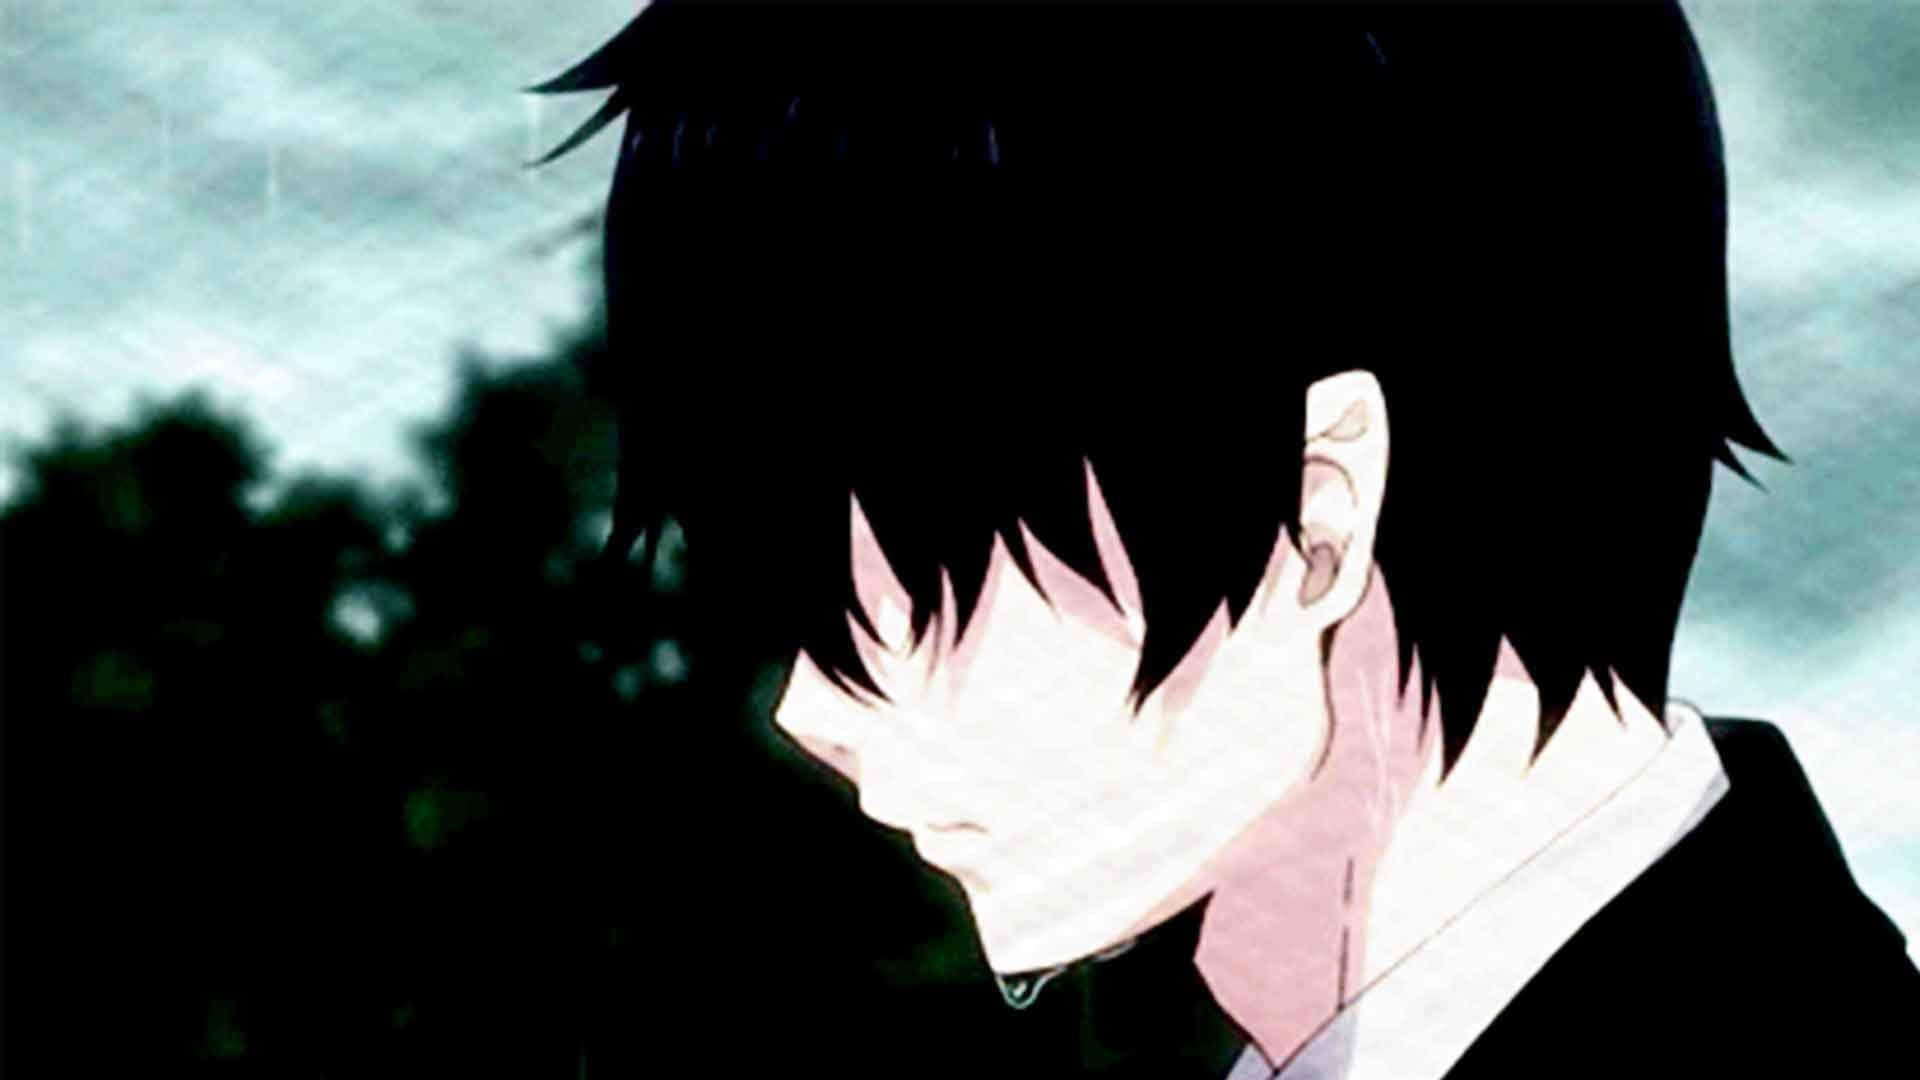 Eintrauriges Weinendes Anime-mädchen Hält Ihren Kopf Vor Schmerz. Wallpaper